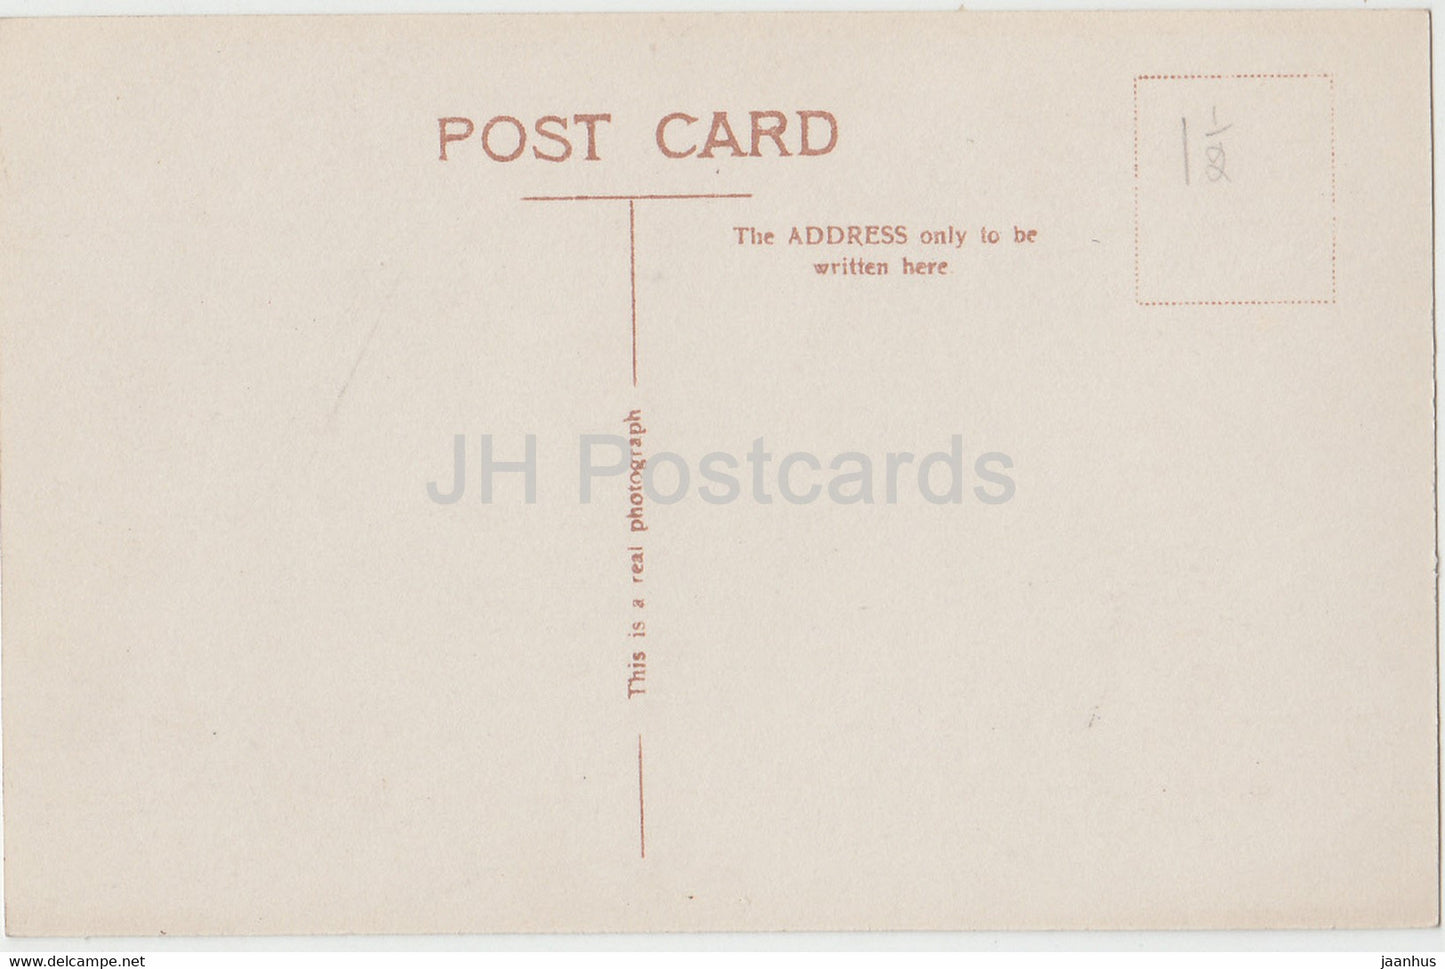 Oxford – Sheldonian Theatre und Broad Street – altes Auto – alte Postkarte – England – Vereinigtes Königreich – unbenutzt